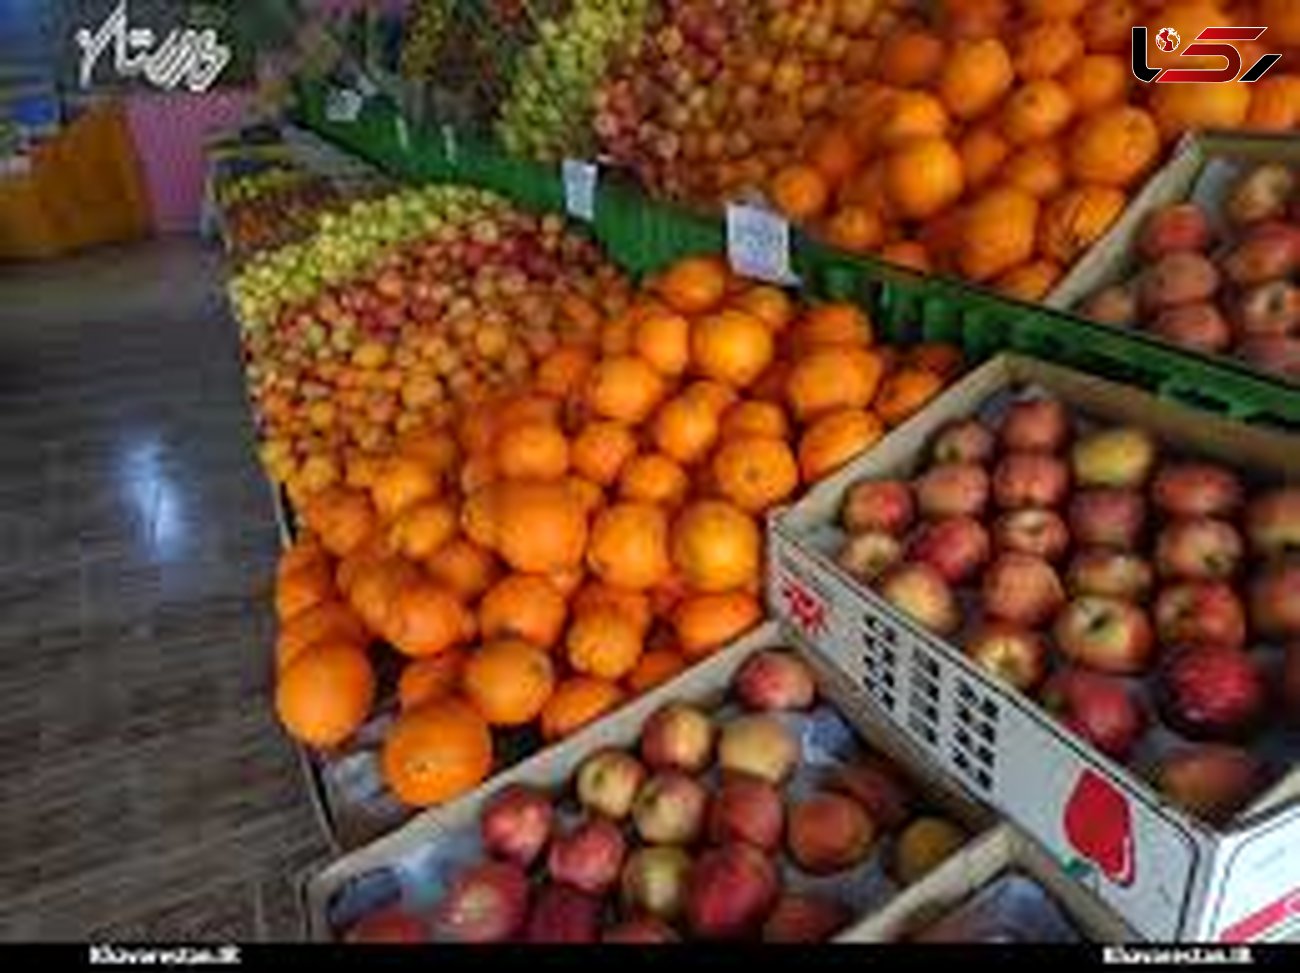 نارنگی پاکستان هم غیر قانونی وارد بازار شد/قیمت سیب درختی افزایش یافت